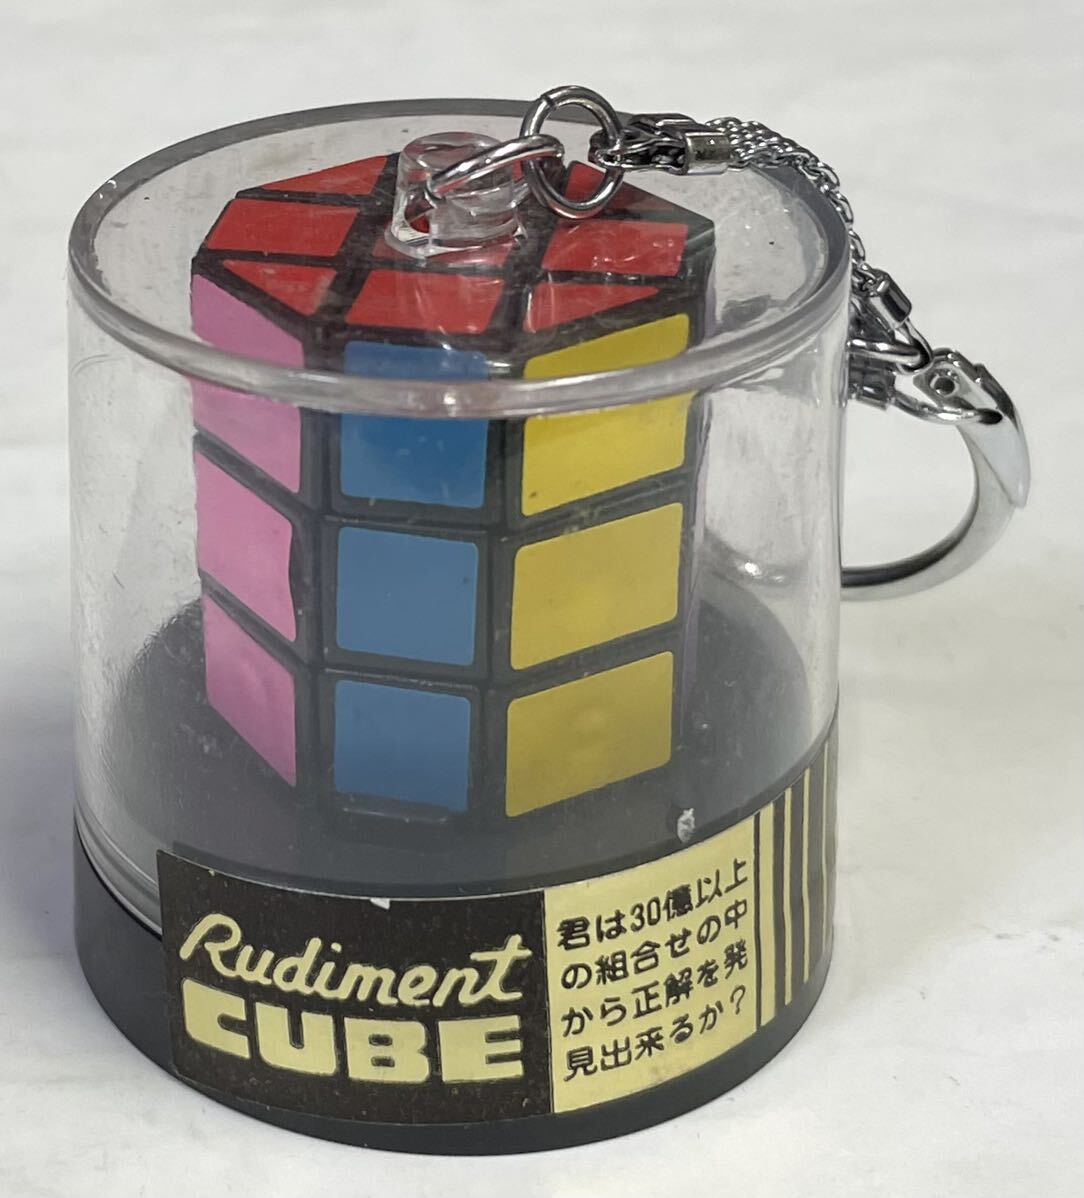 昭和レトロ 当時物 立体パズル rudiment cube 八角形 キーホルダー 経年保管品 検・ルービックキューブ パチモノ デッドストック の画像4